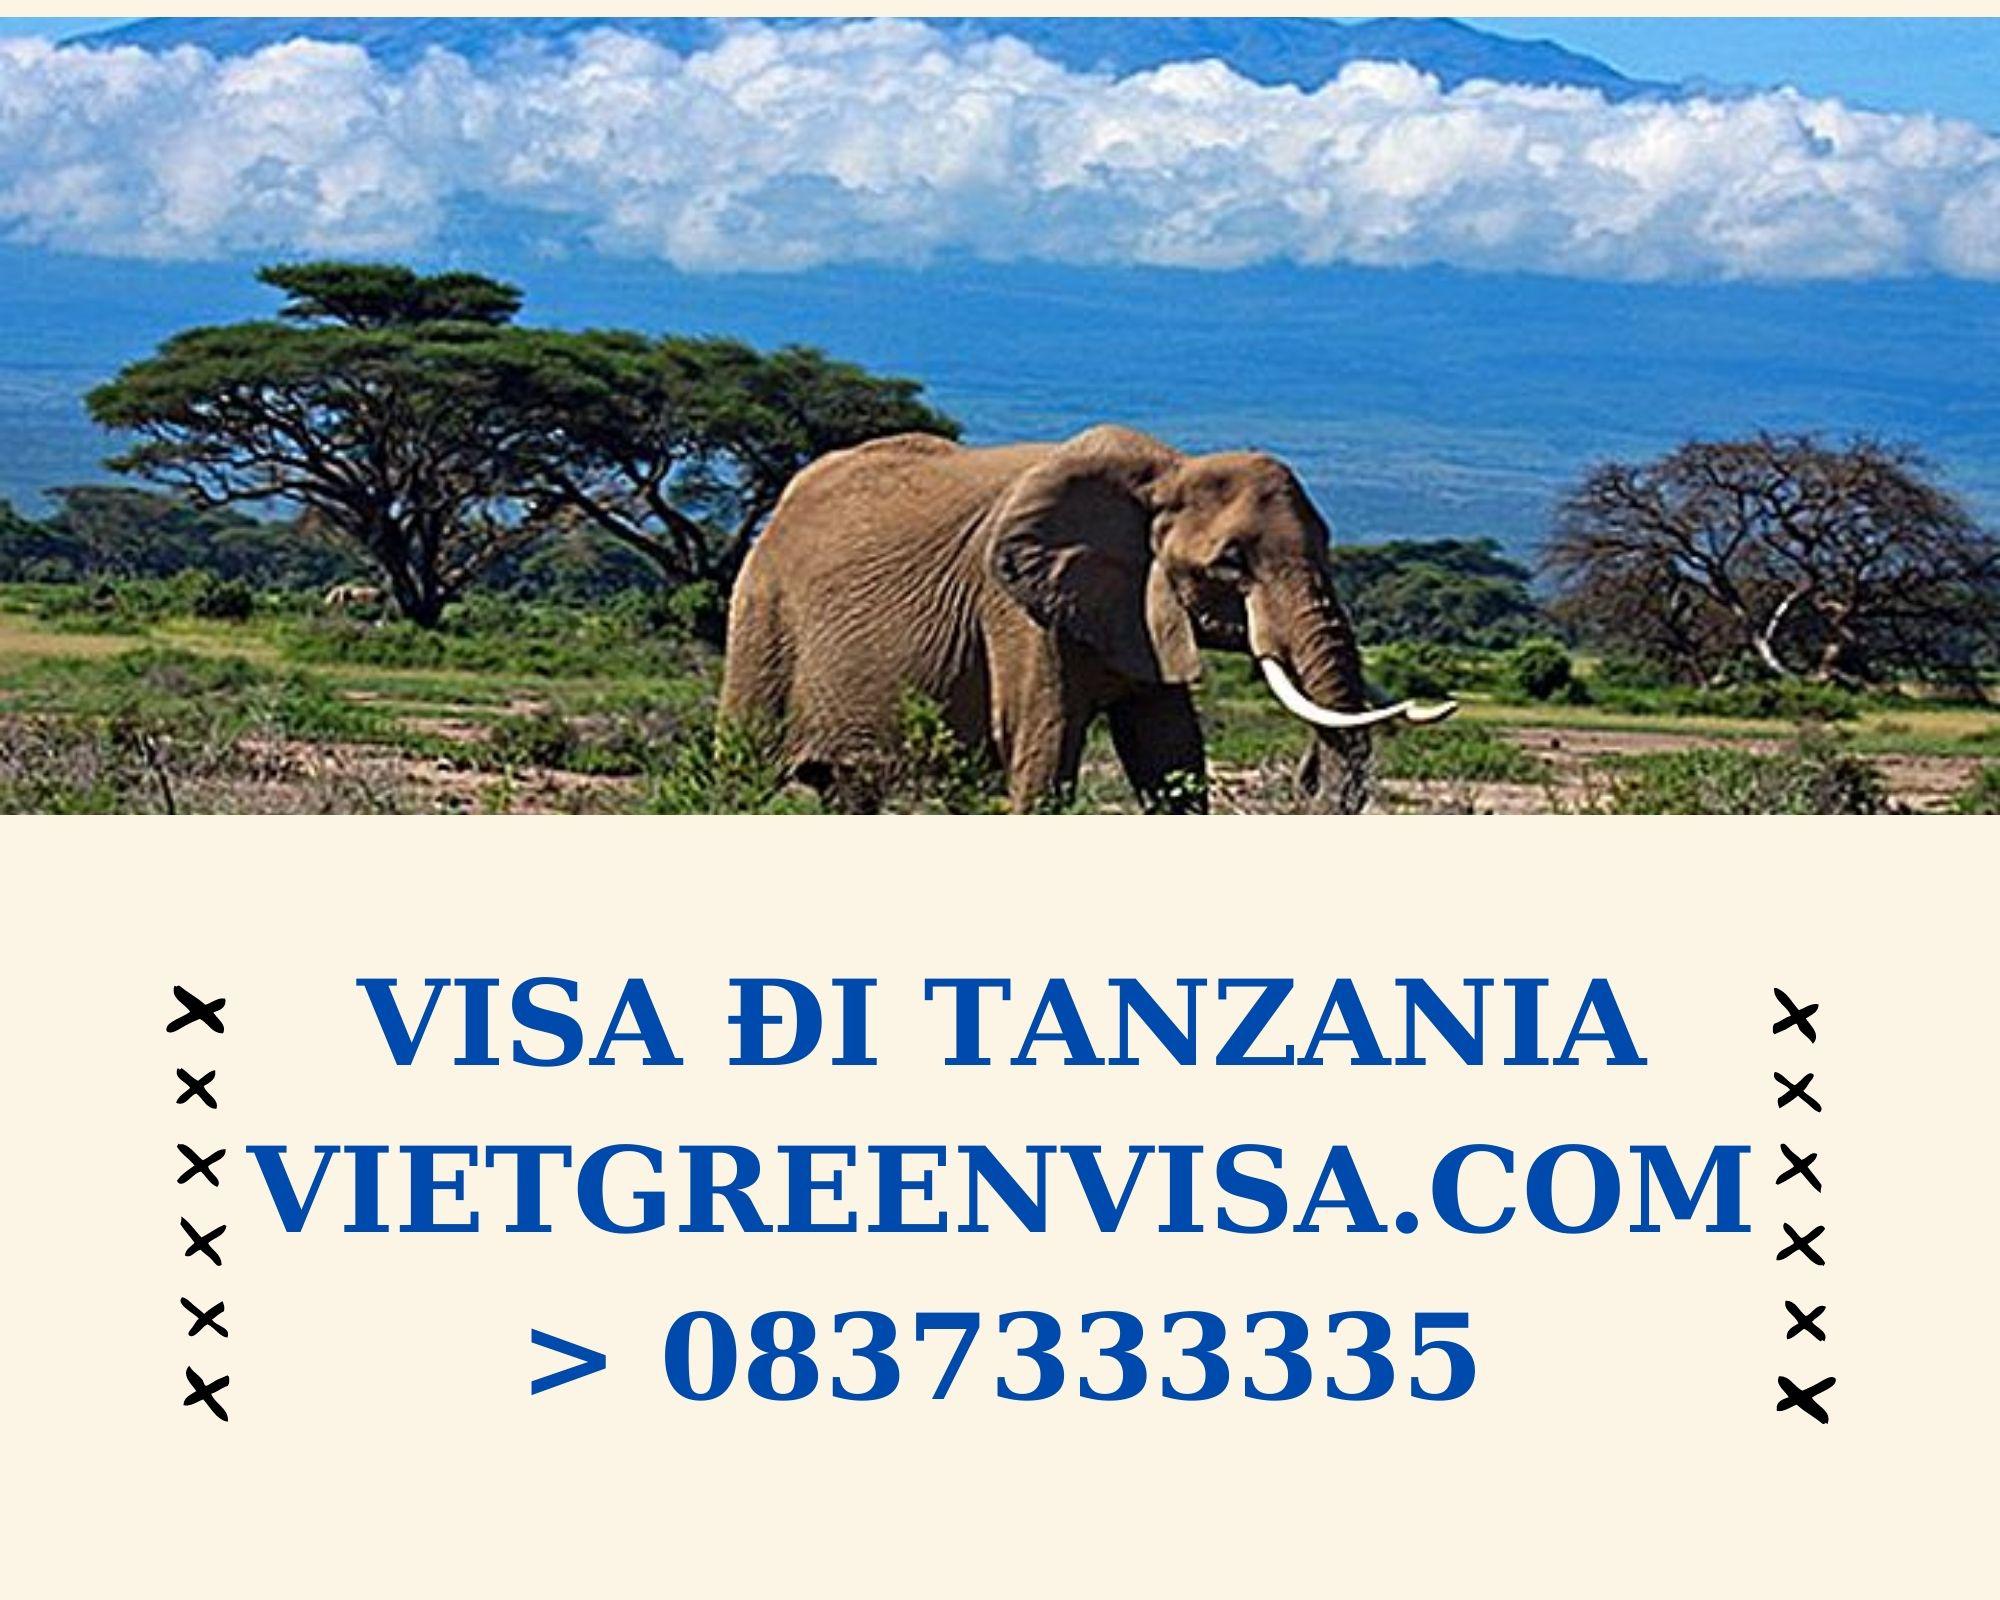 Làm Visa Tanzania thăm thân uy tín, nhanh chóng , giá rẻ